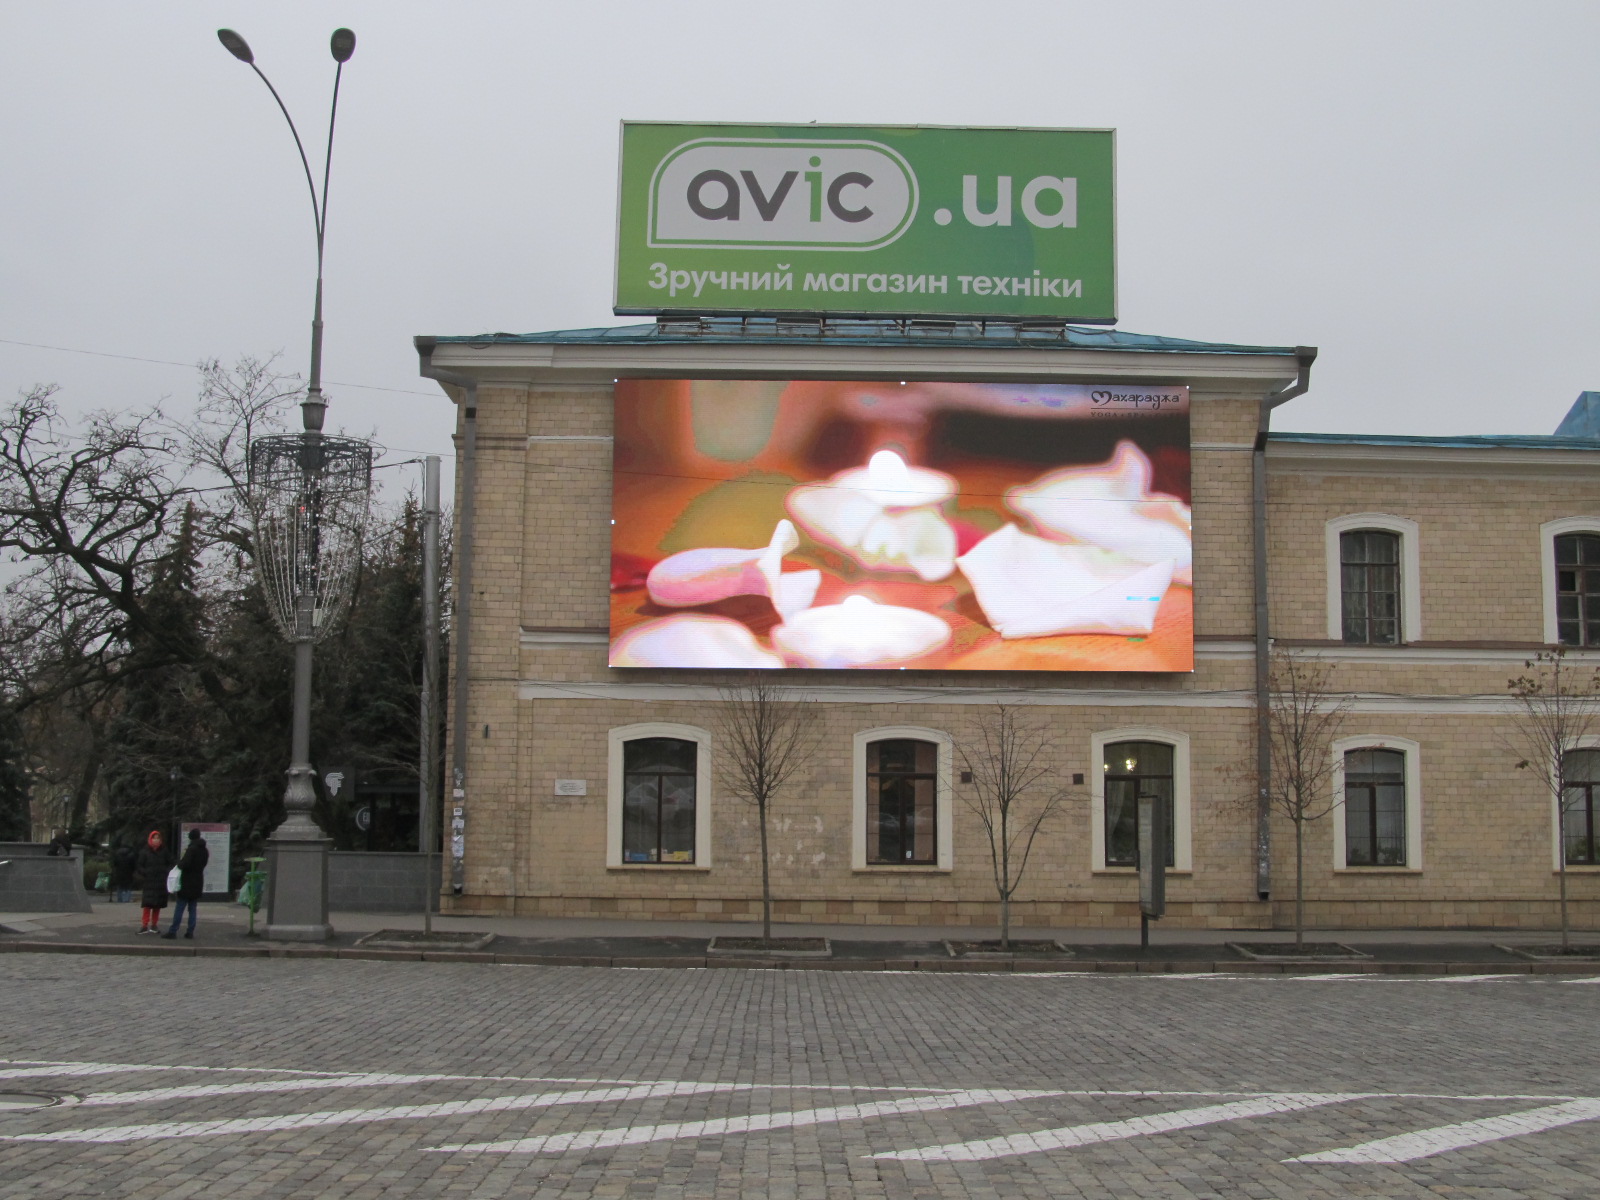 Светодиодный экран на фасаде Дворца пионеров с вашей рекламой